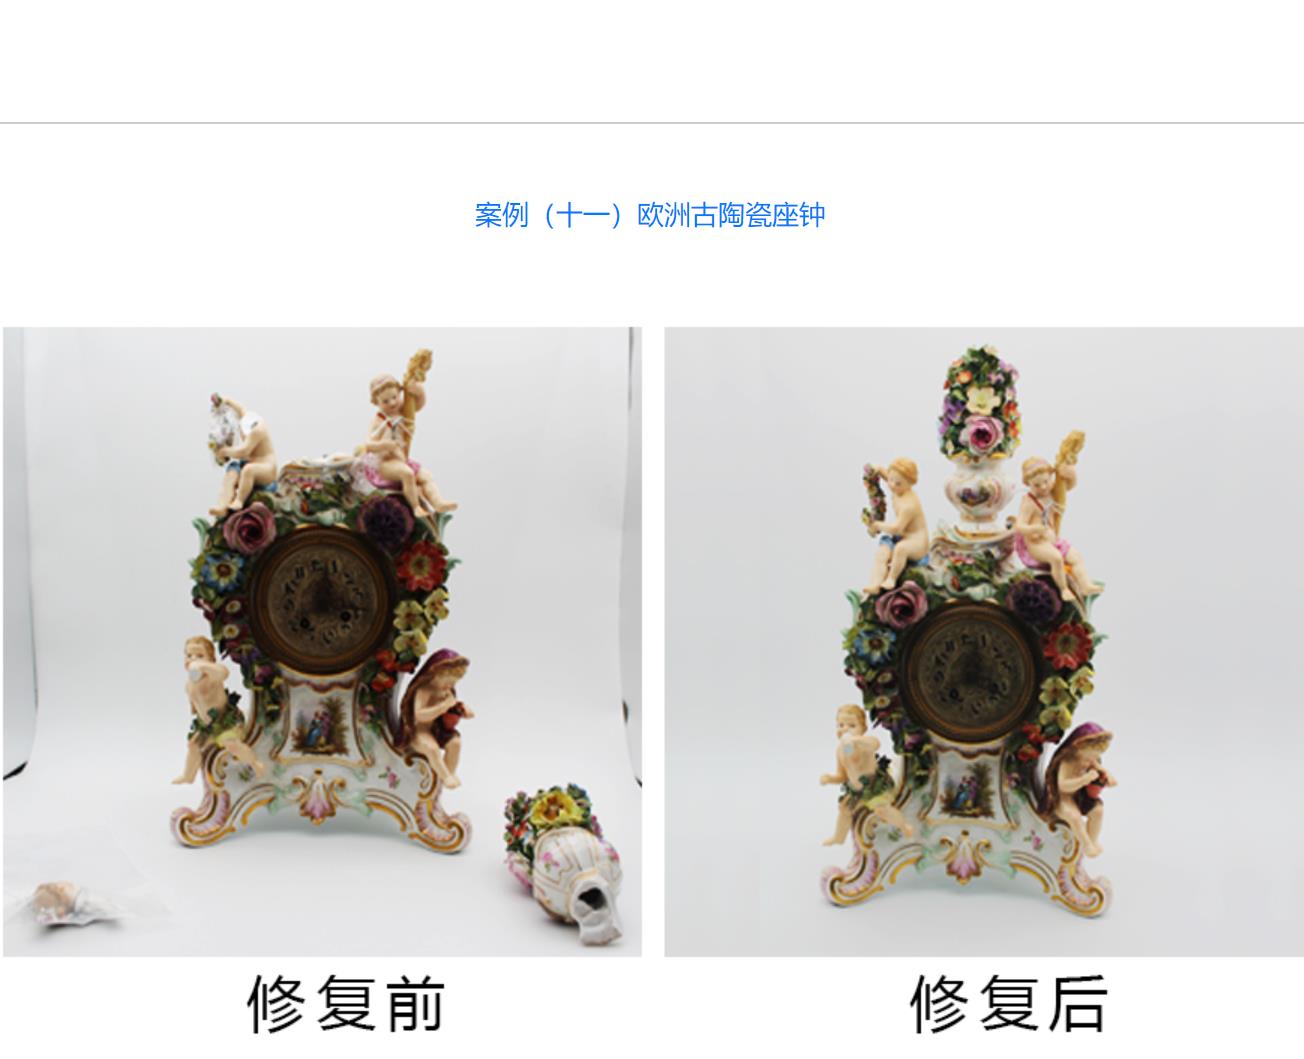 荆州**维也纳西洋古董瓷器修复 值得推荐机构